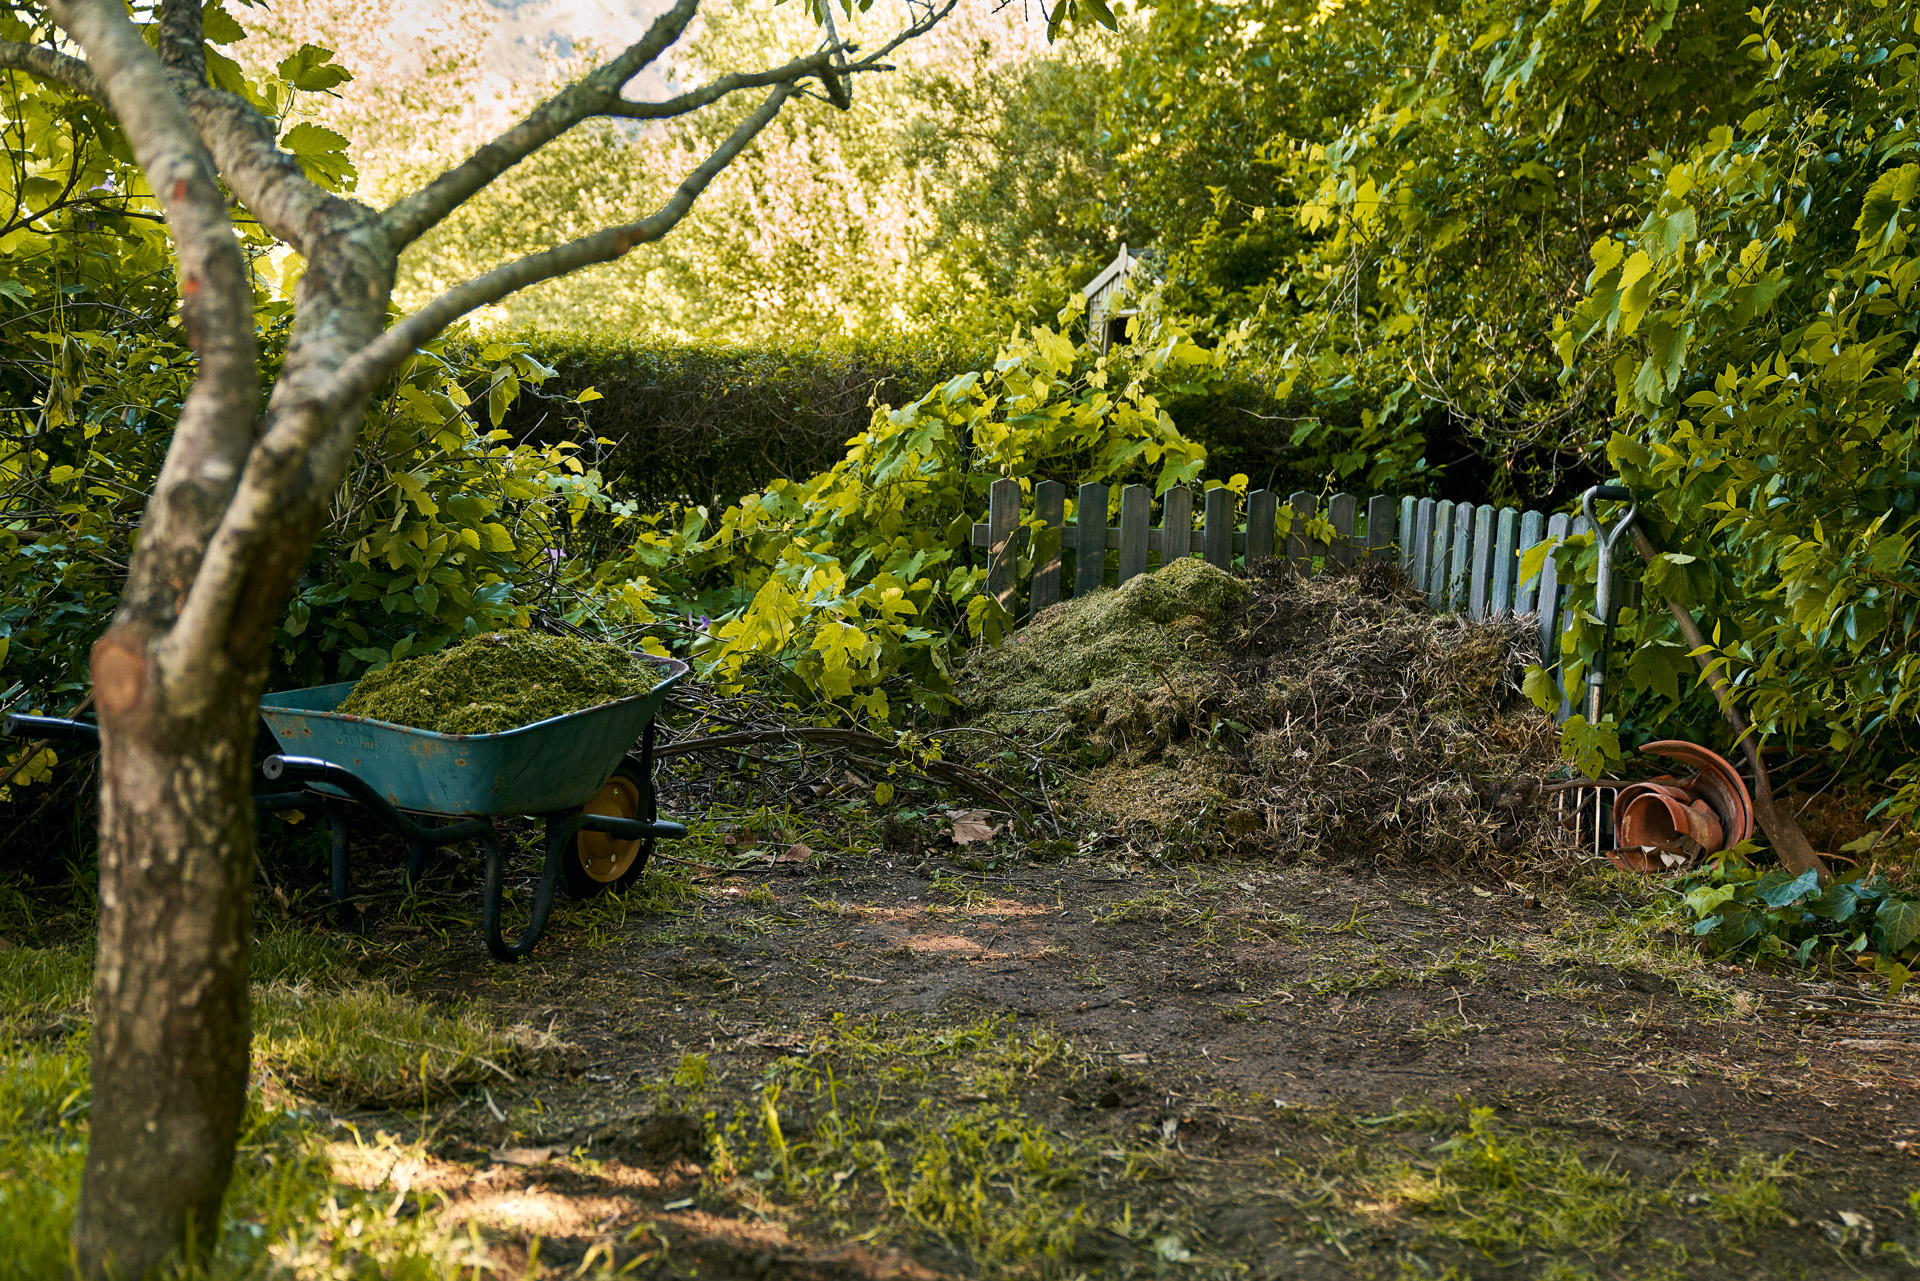 A compost heap and wheelbarrow in a shady corner of a garden